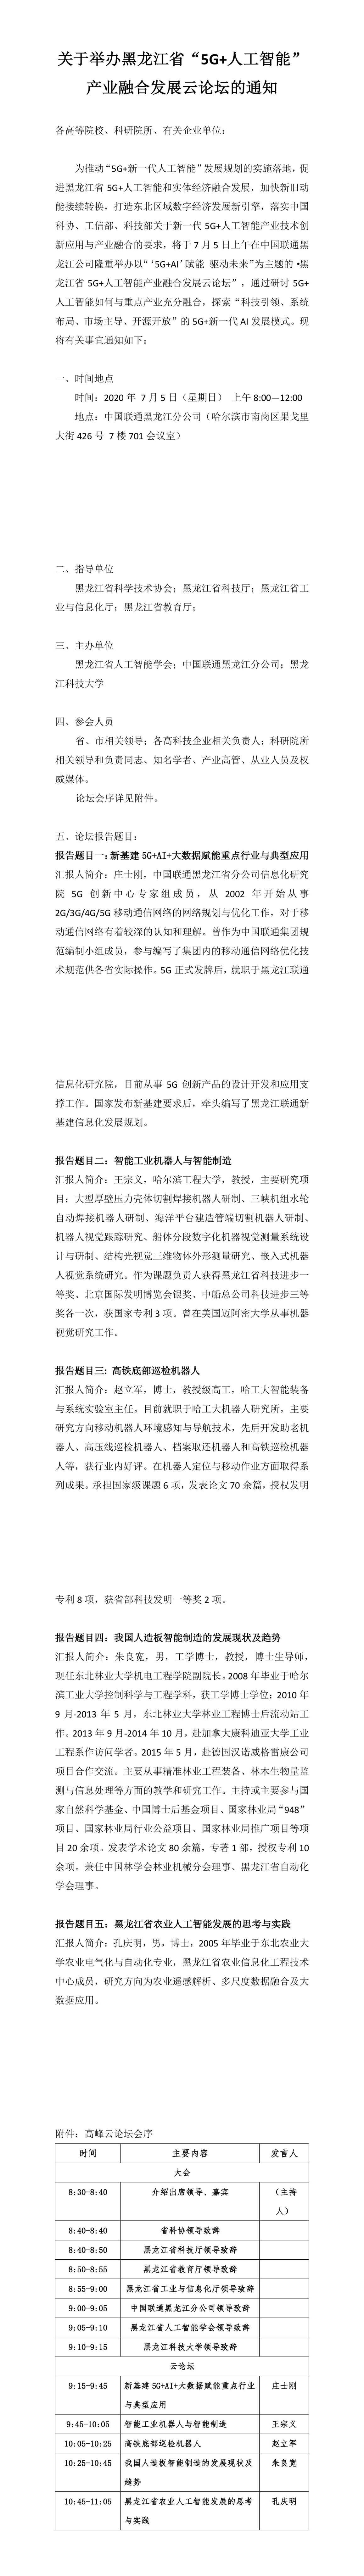 黑龙江省人工智能产业融合发展高峰云论坛的通知111(1).pdf.jpg